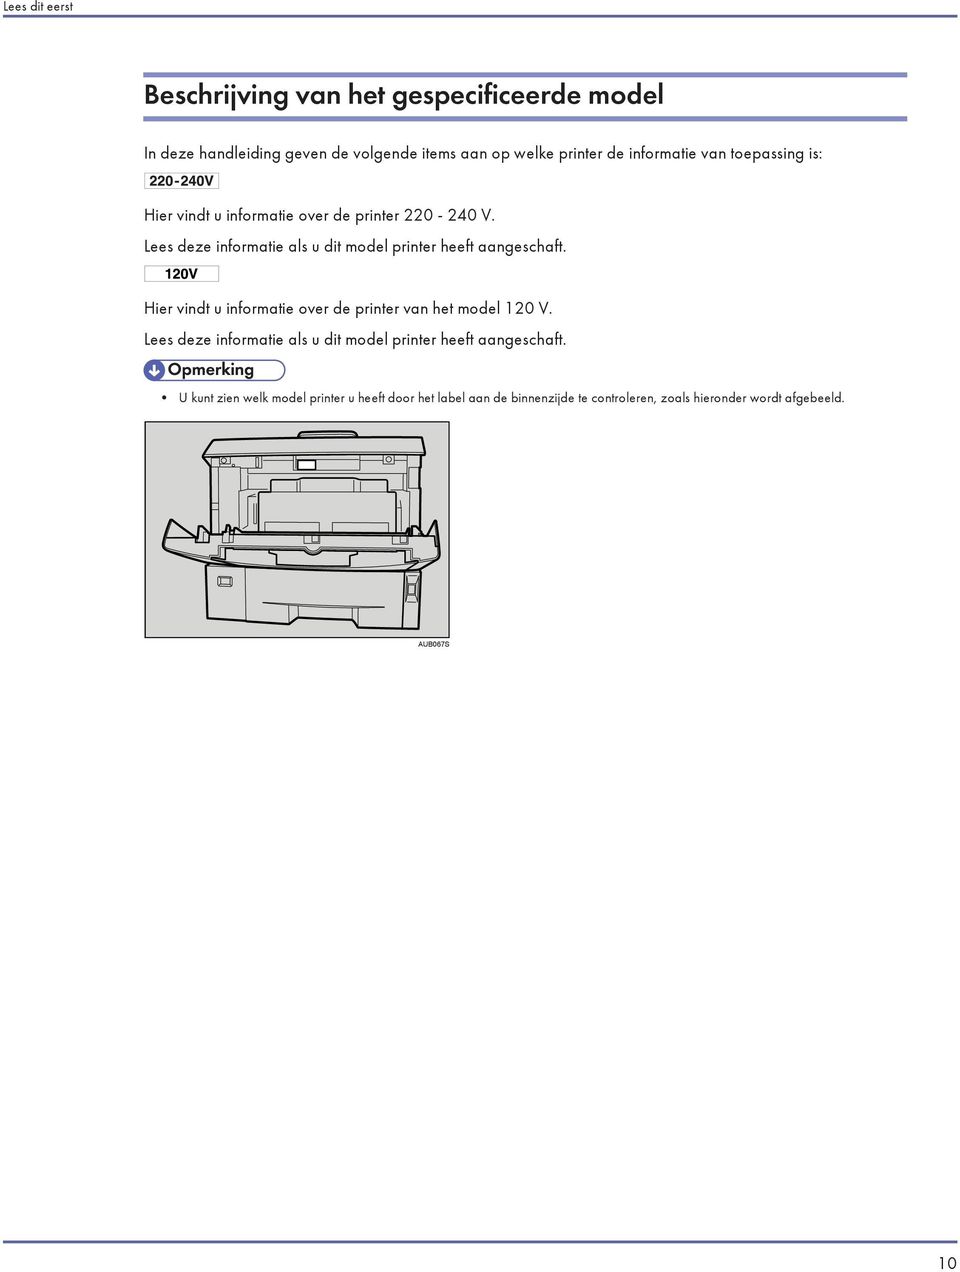 Lees deze informatie als u dit model printer heeft aangeschaft. Hier vindt u informatie over de printer van het model 120 V.